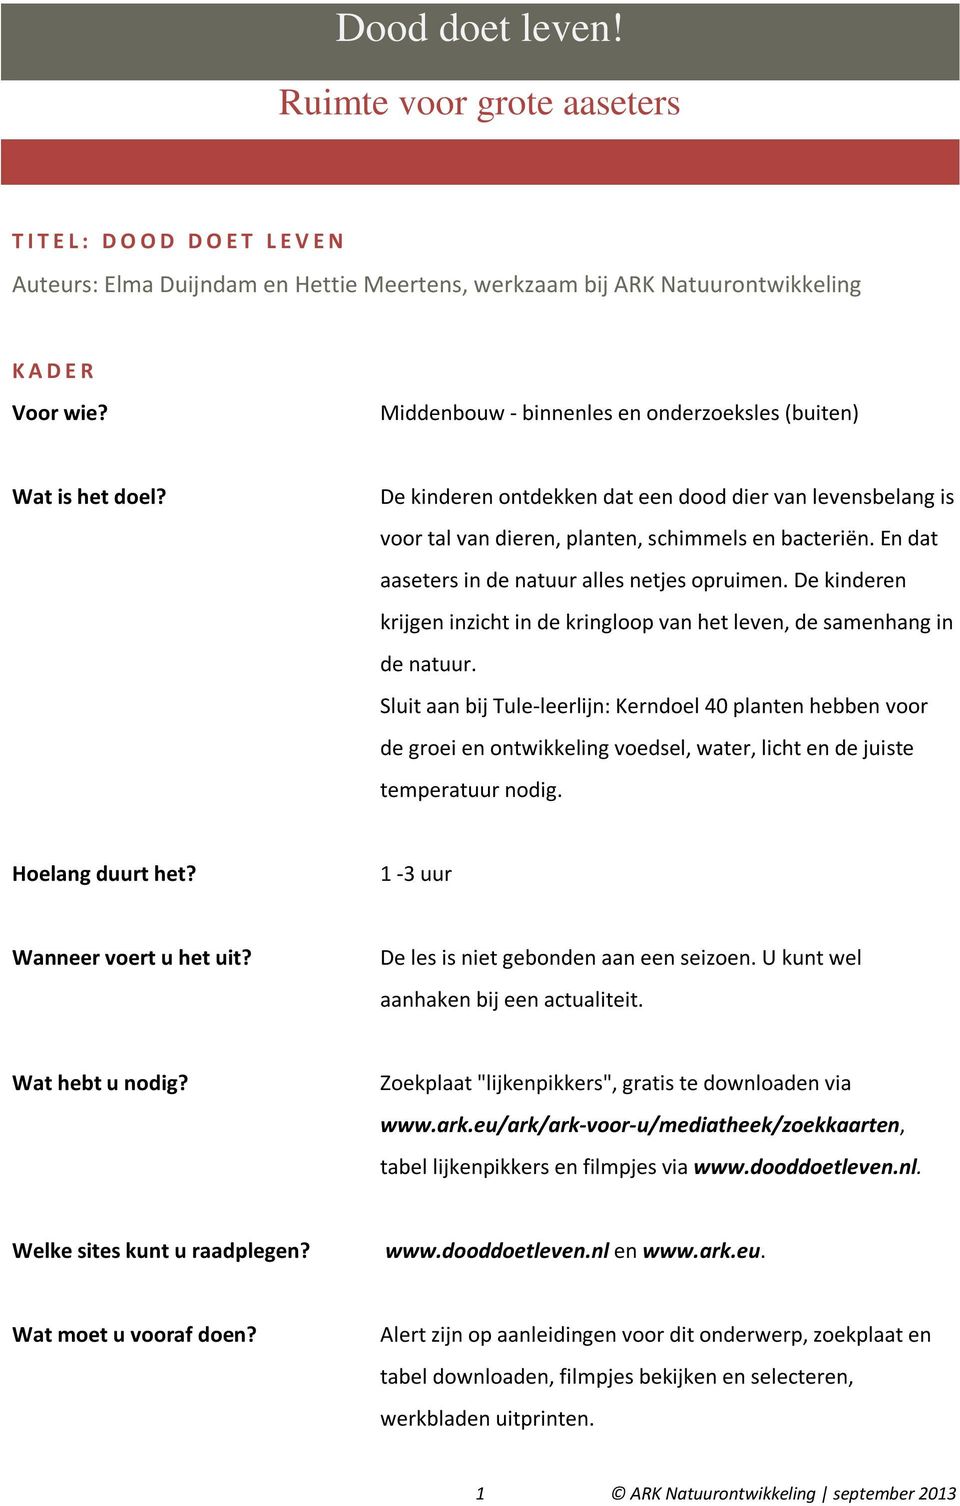 Dood doet leven! Ruimte voor grote aaseters. Auteurs: Elma Duijndam en  Hettie Meertens, werkzaam bij ARK Natuurontwikkeling - PDF Free Download